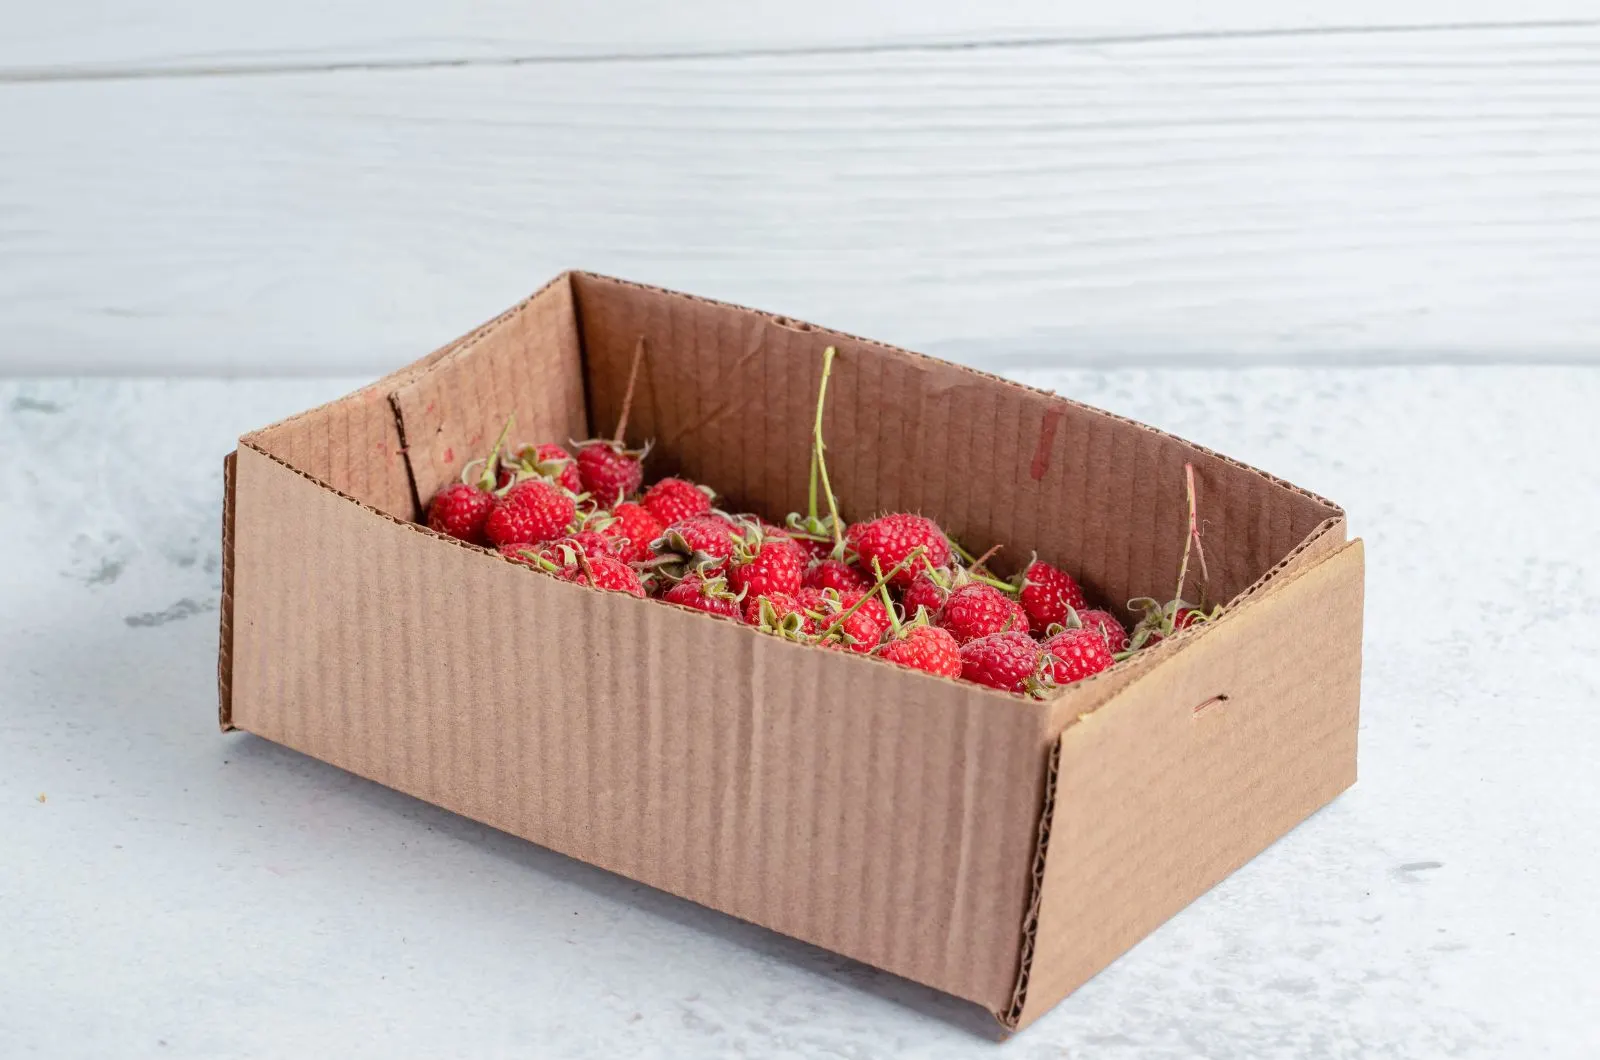 Raspberries in box